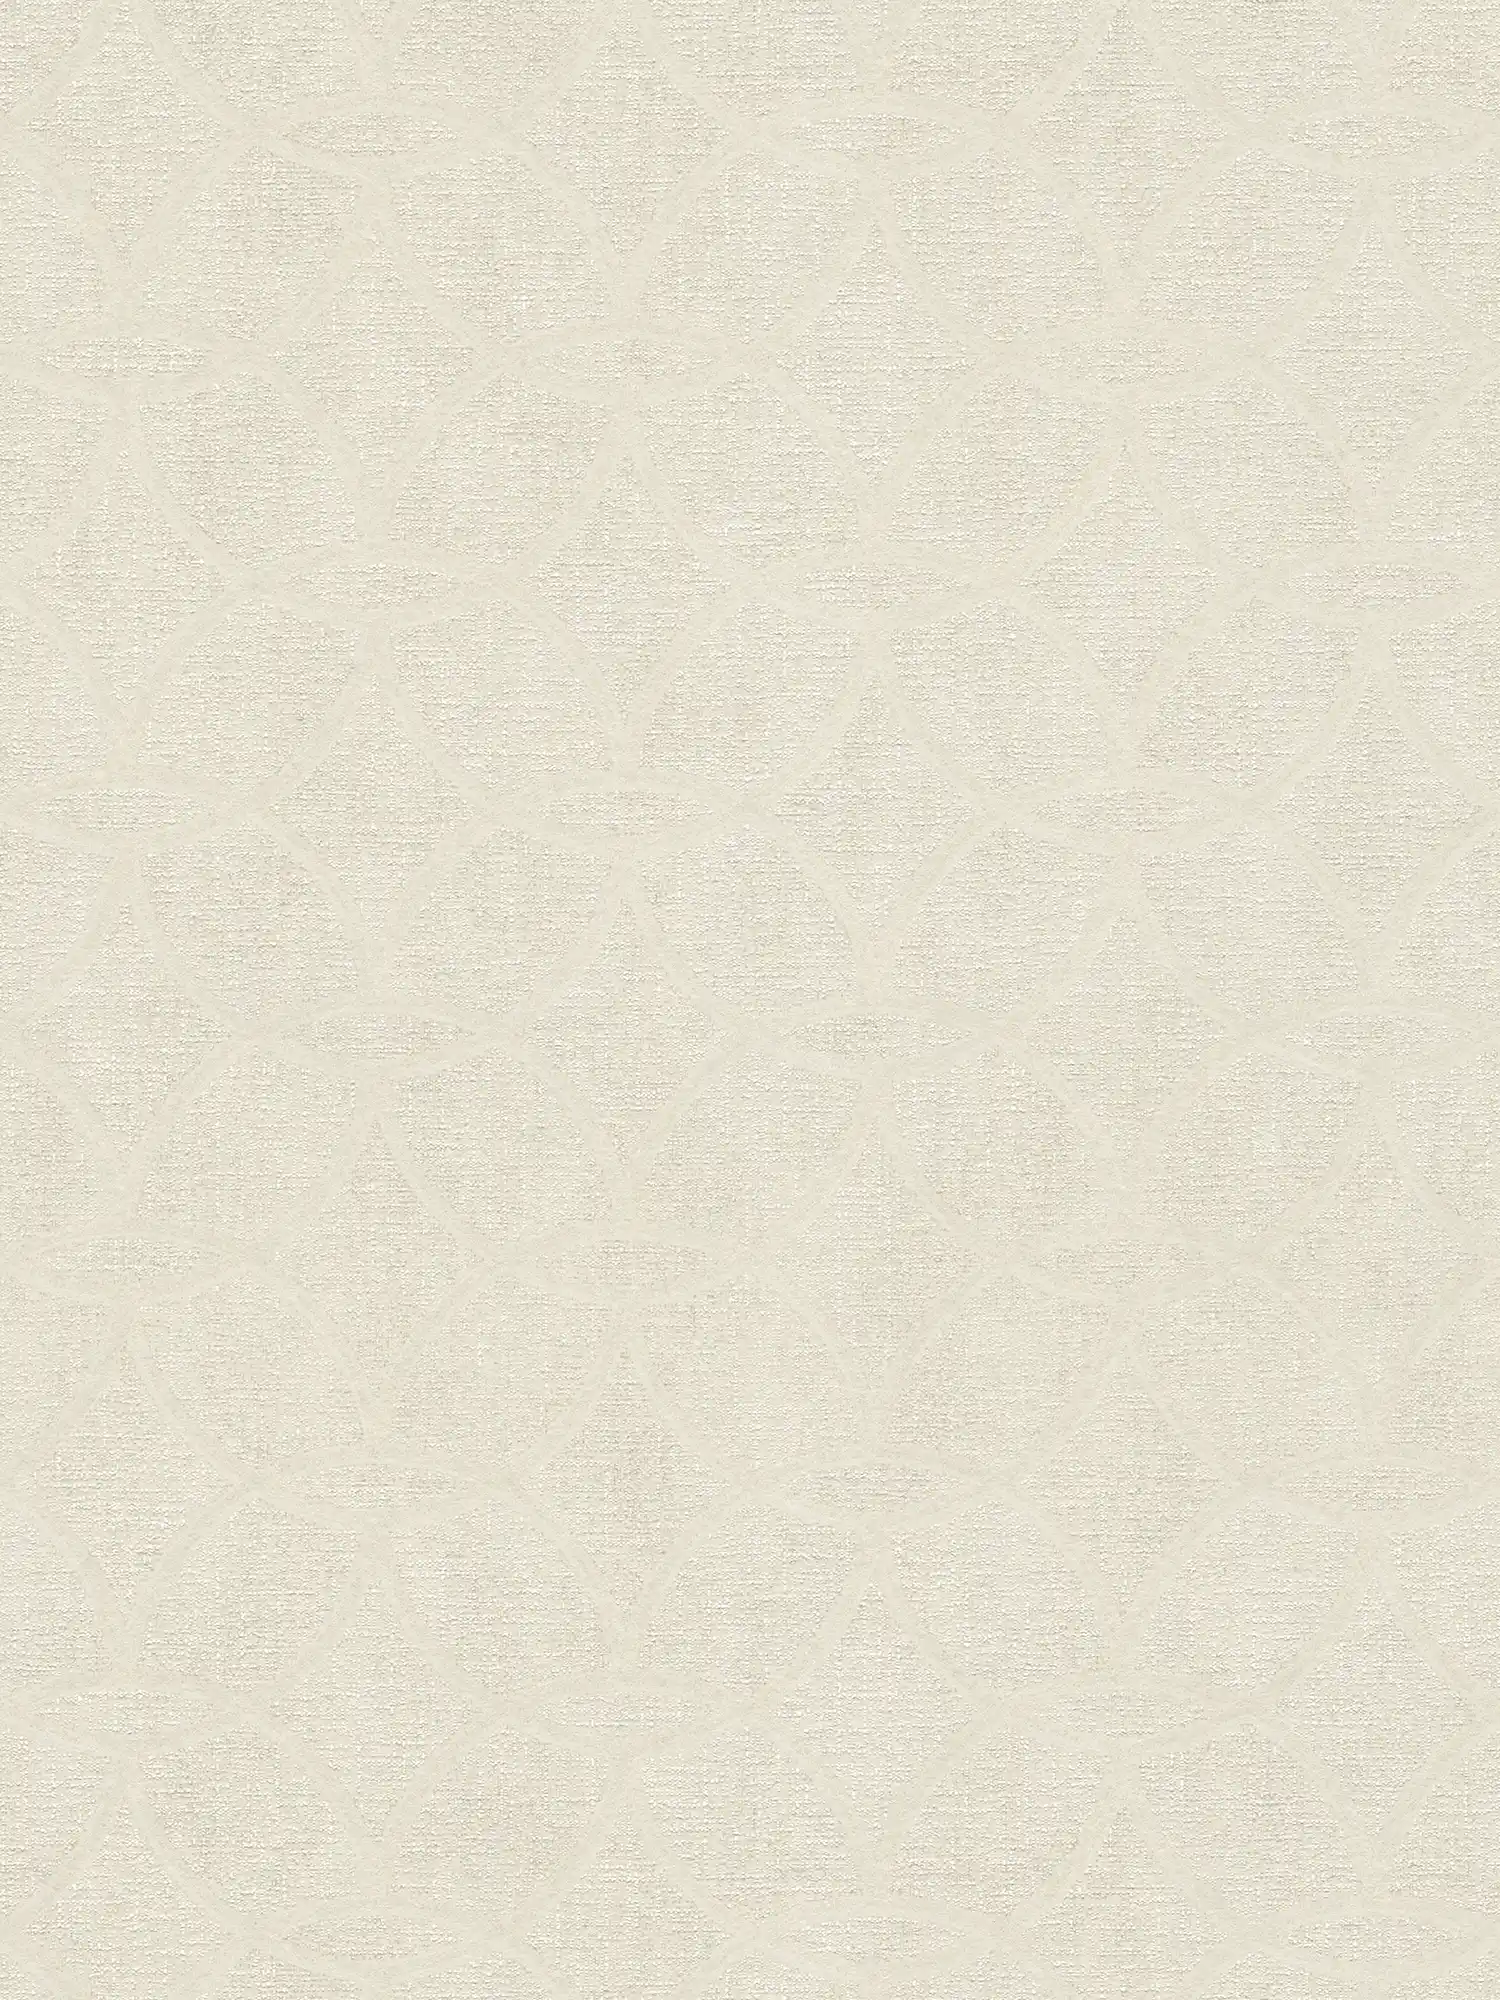 Carta da parati bianco crema con motivo lucido e disegno geometrico - bianco
